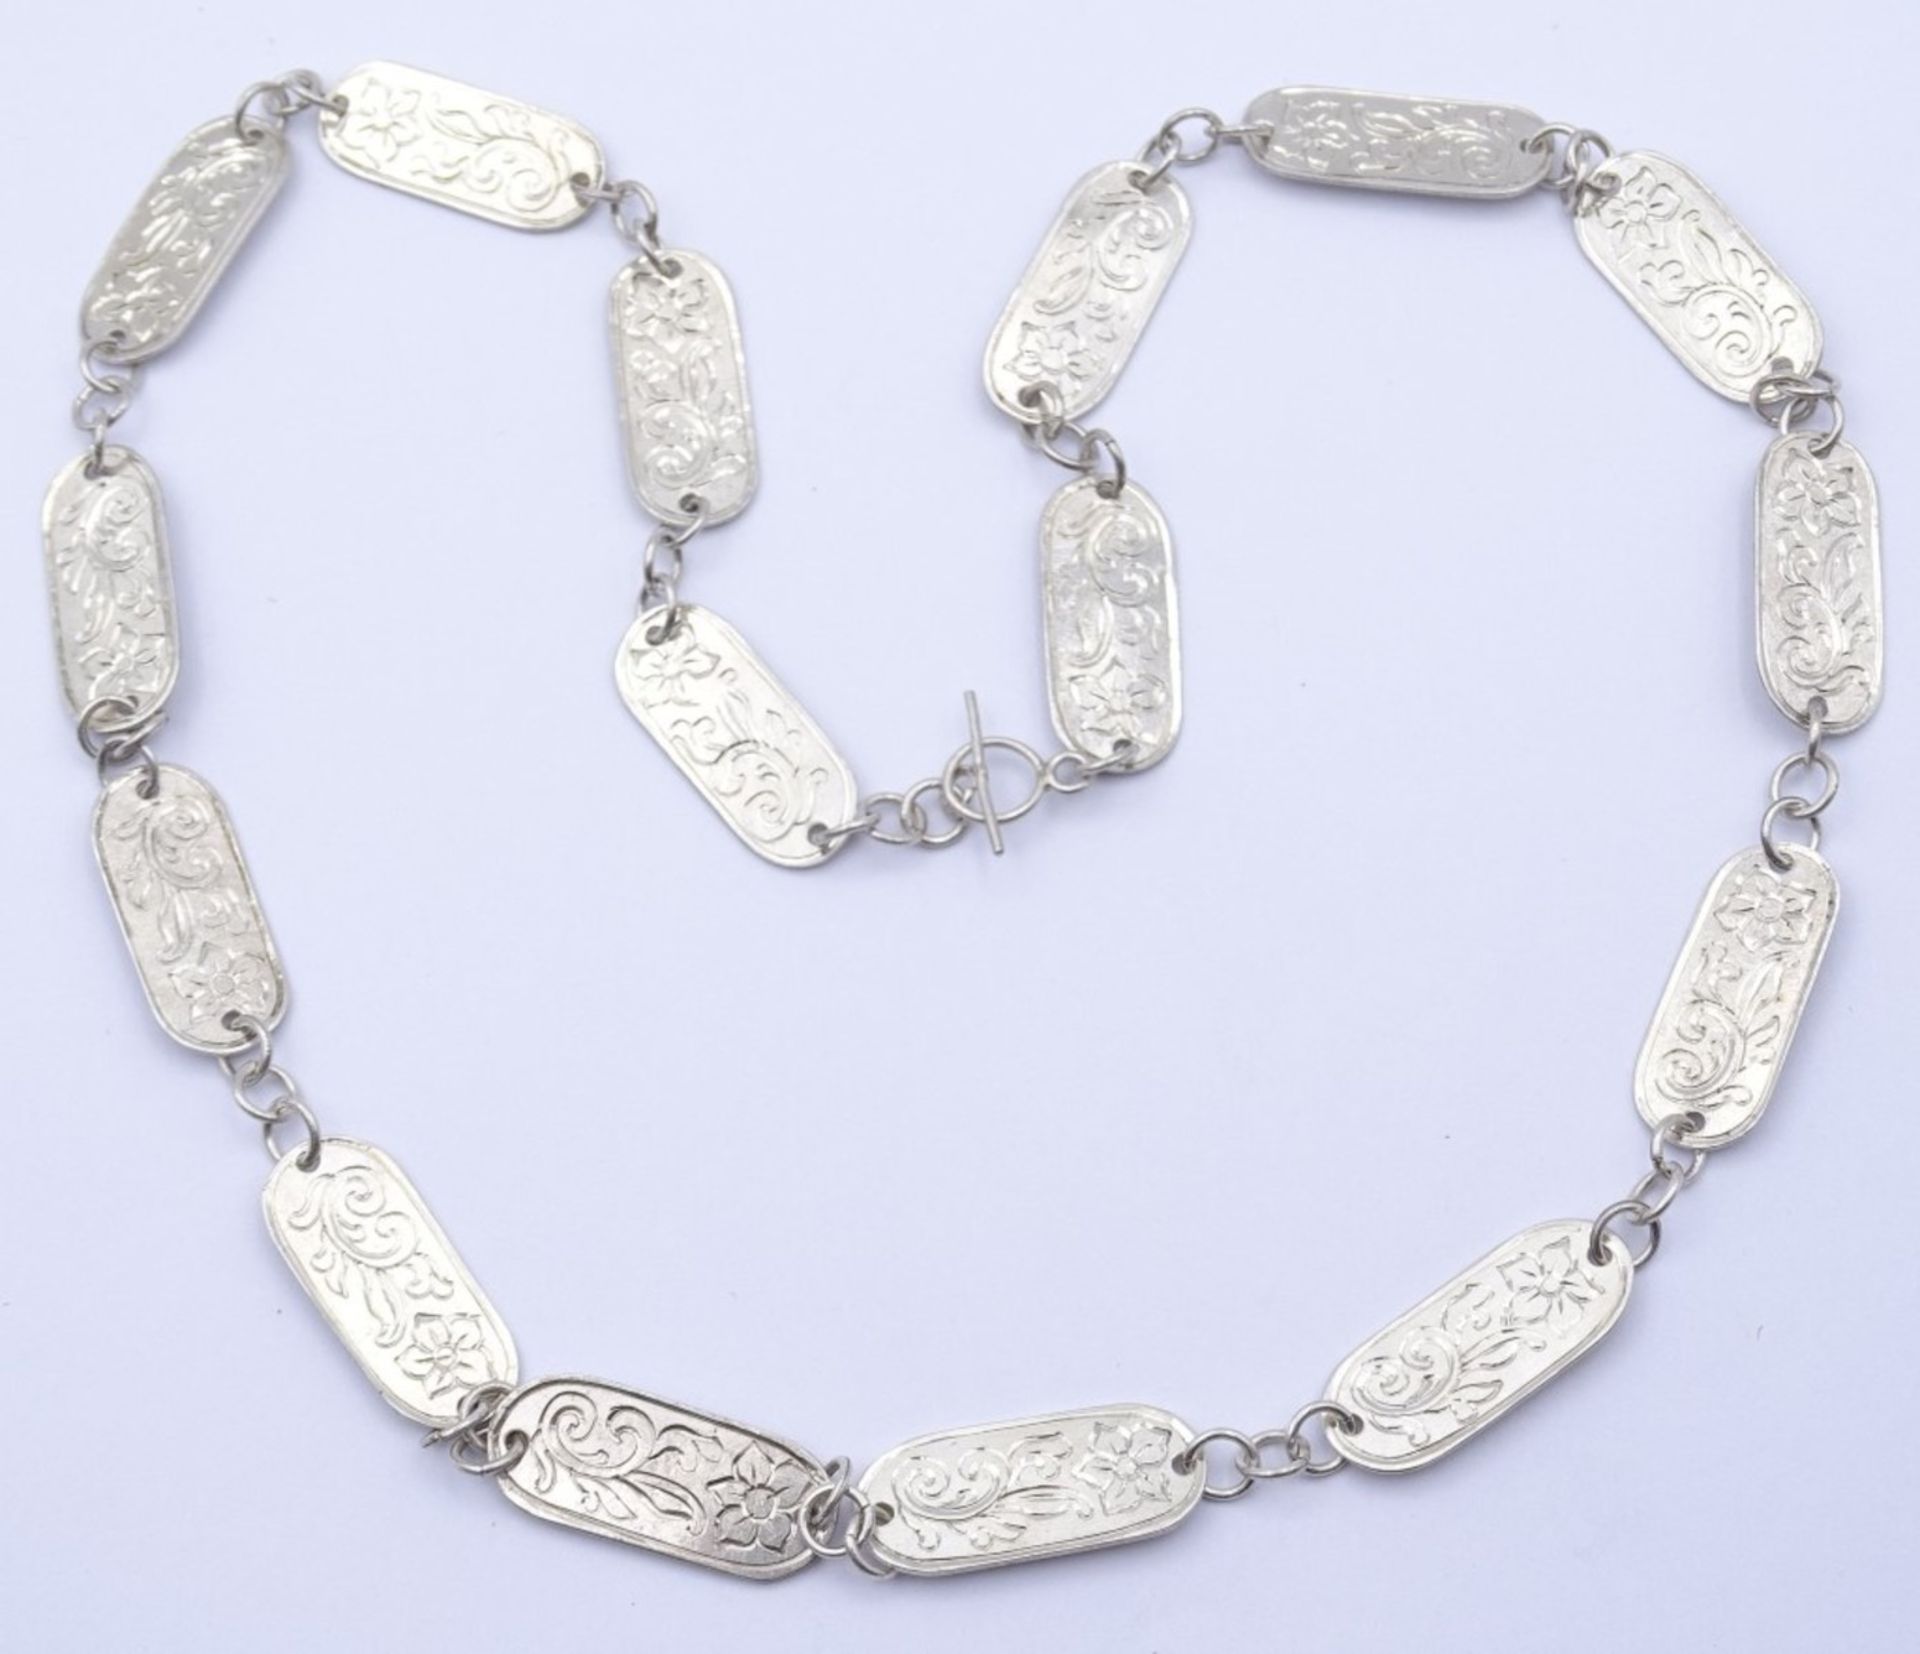 800er Silber Halskette, floral verziert,Handarbeit,L- 50cm, 21,2gr.